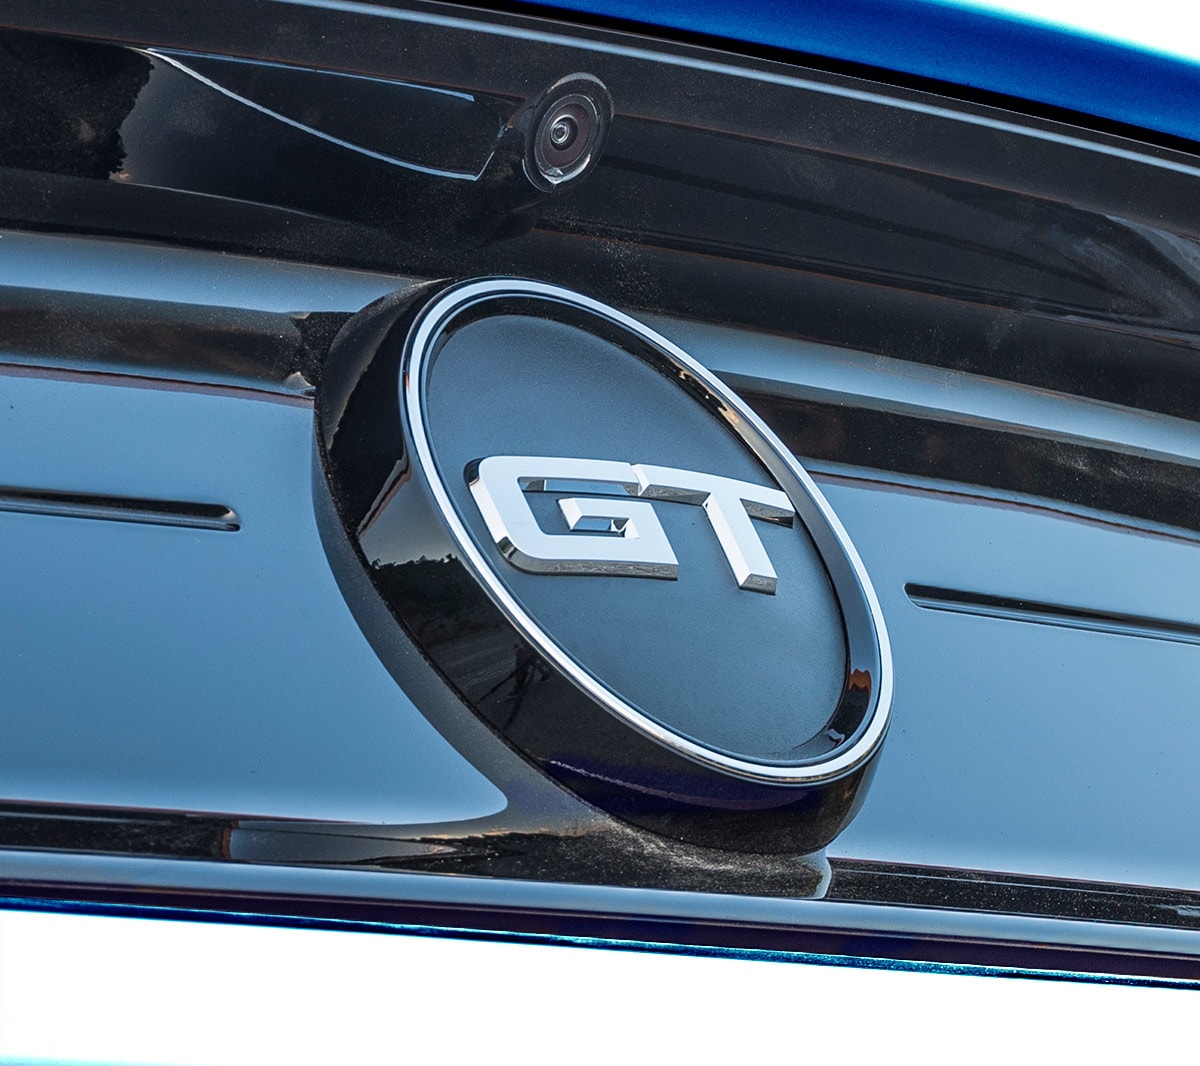 Ford Mustang GT. Vue détaillée du sigle GT